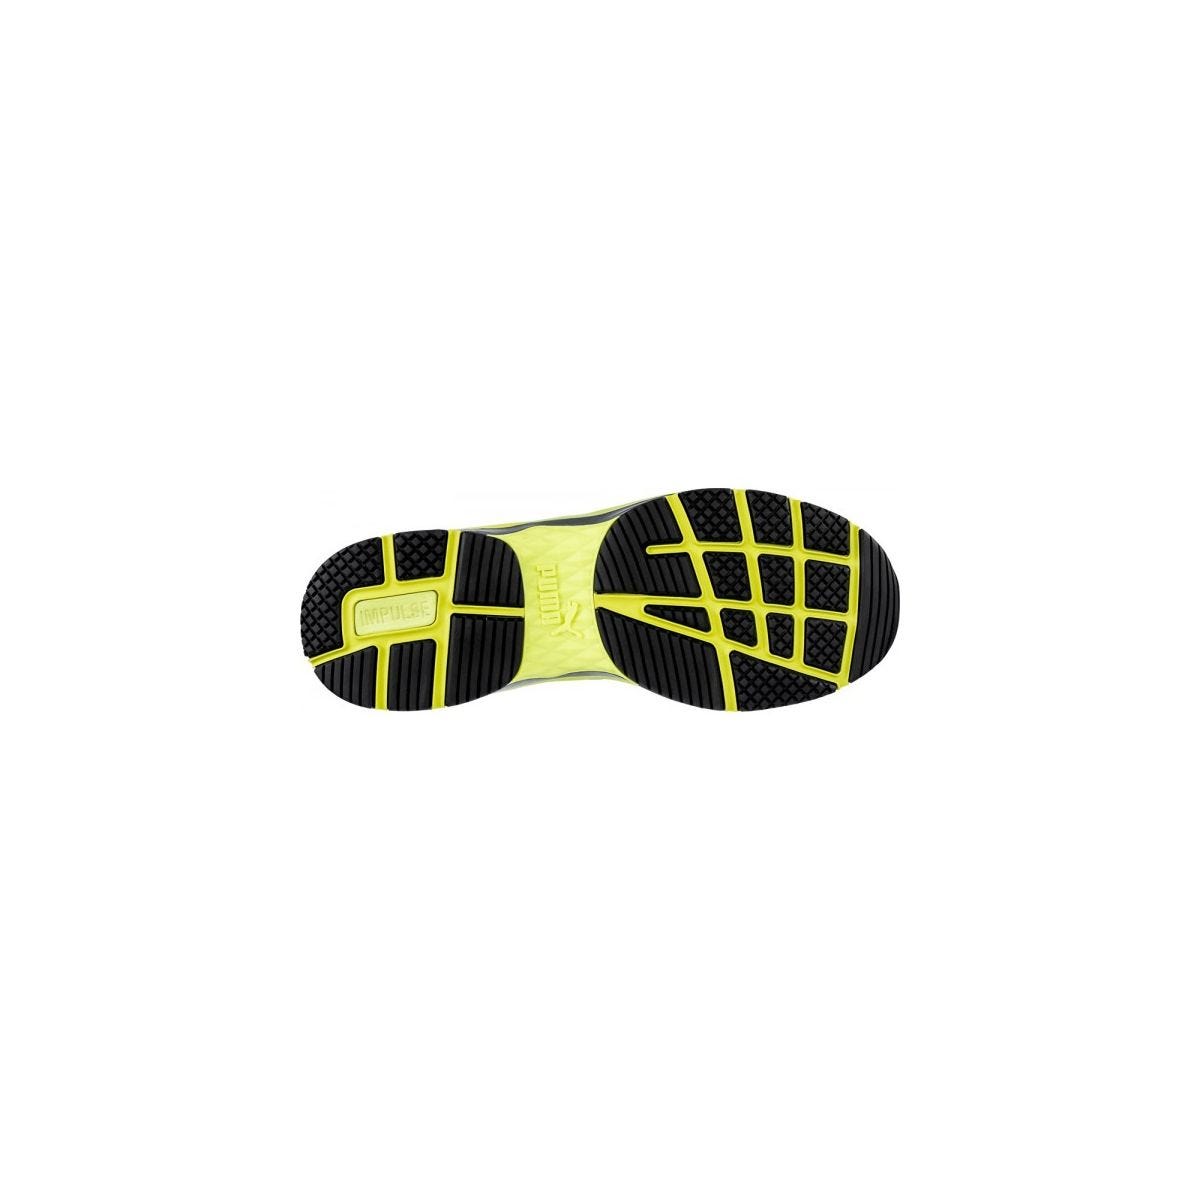 Chaussures de sécurité Velocity 2.0 YELLOW MID S3 - Puma - Taille 40 4